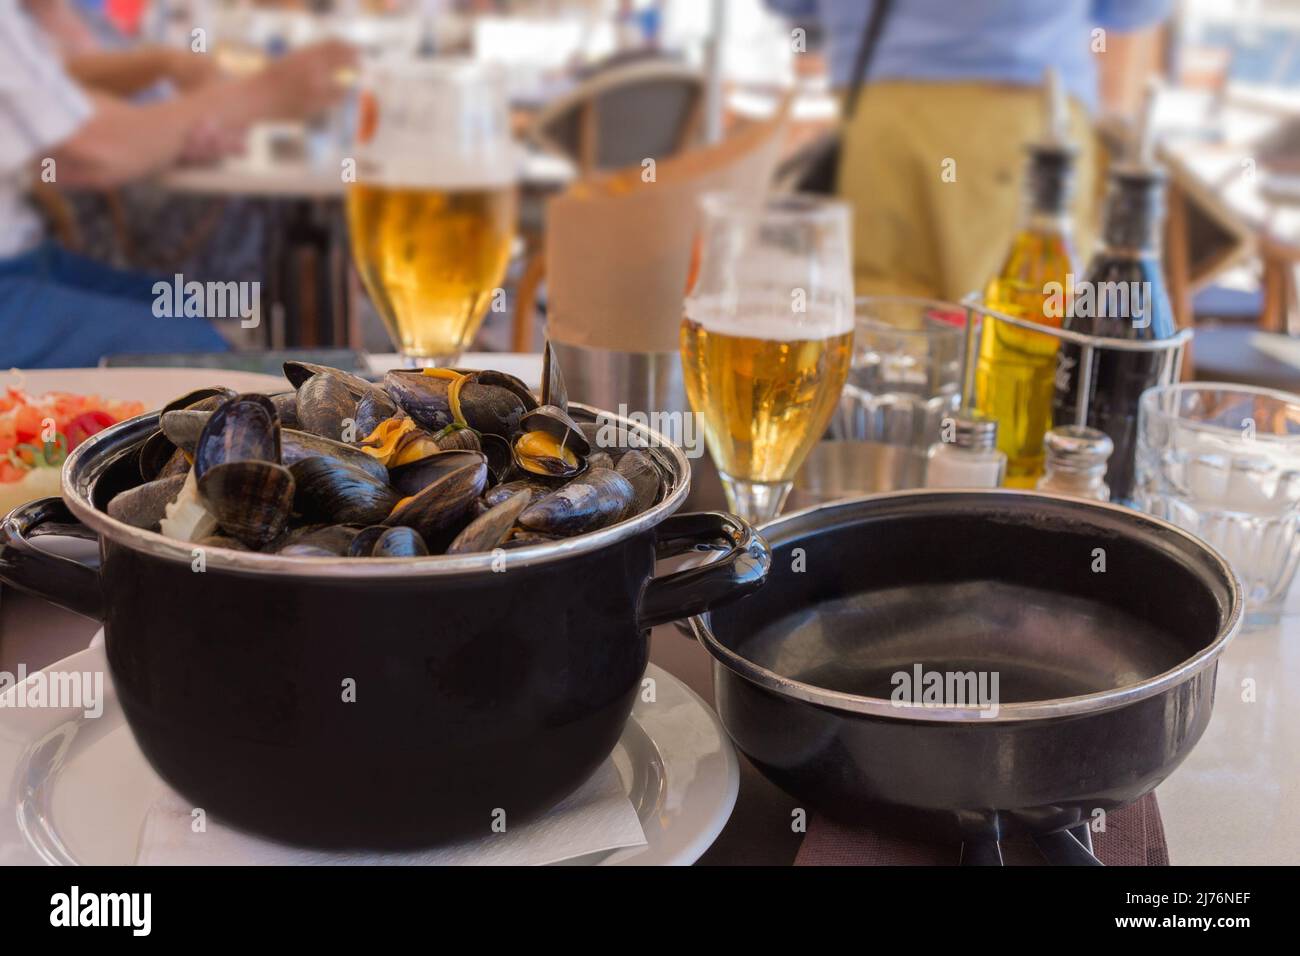 Moules cuites dans une sauce à l'ail dans une casserole noire sur une table dans un restaurant de poissons. Délicieux déjeuner avec fruits de mer et bière. Voyage gastronomique. Fermer-u Banque D'Images